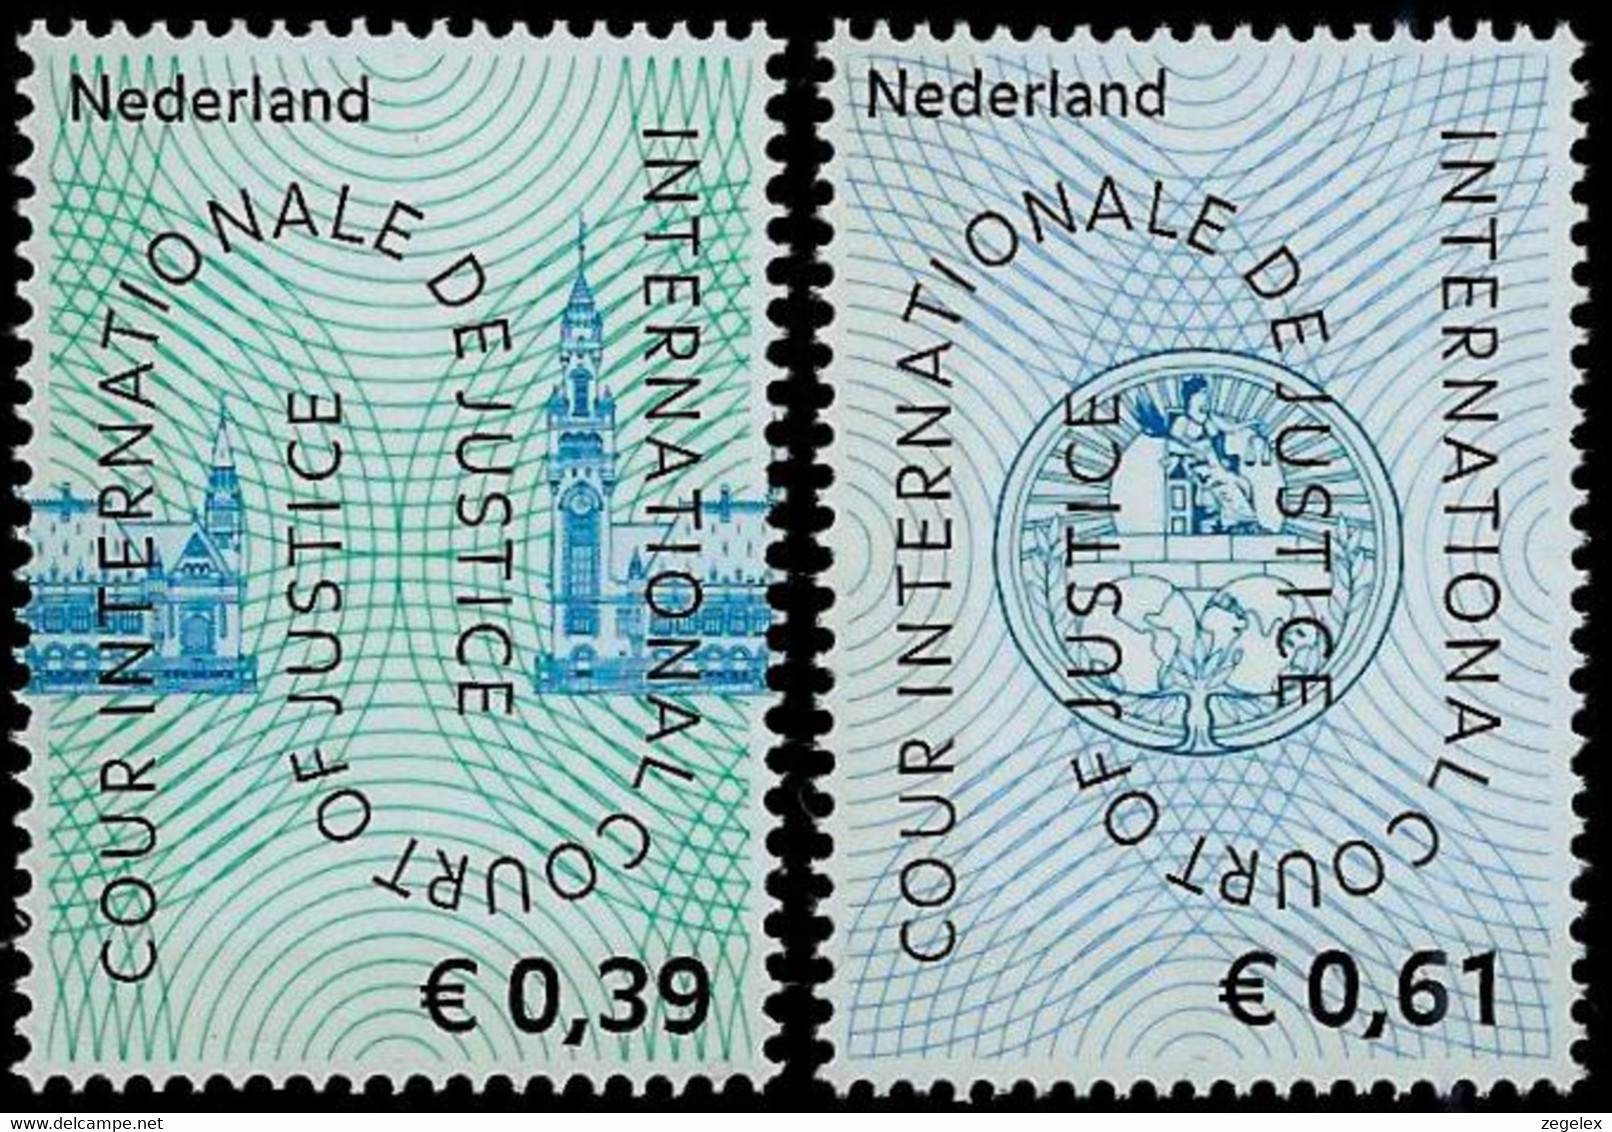 2004 Cour De Justice NVPH D59-60 MNH**/Postfrisch - Dienstmarken